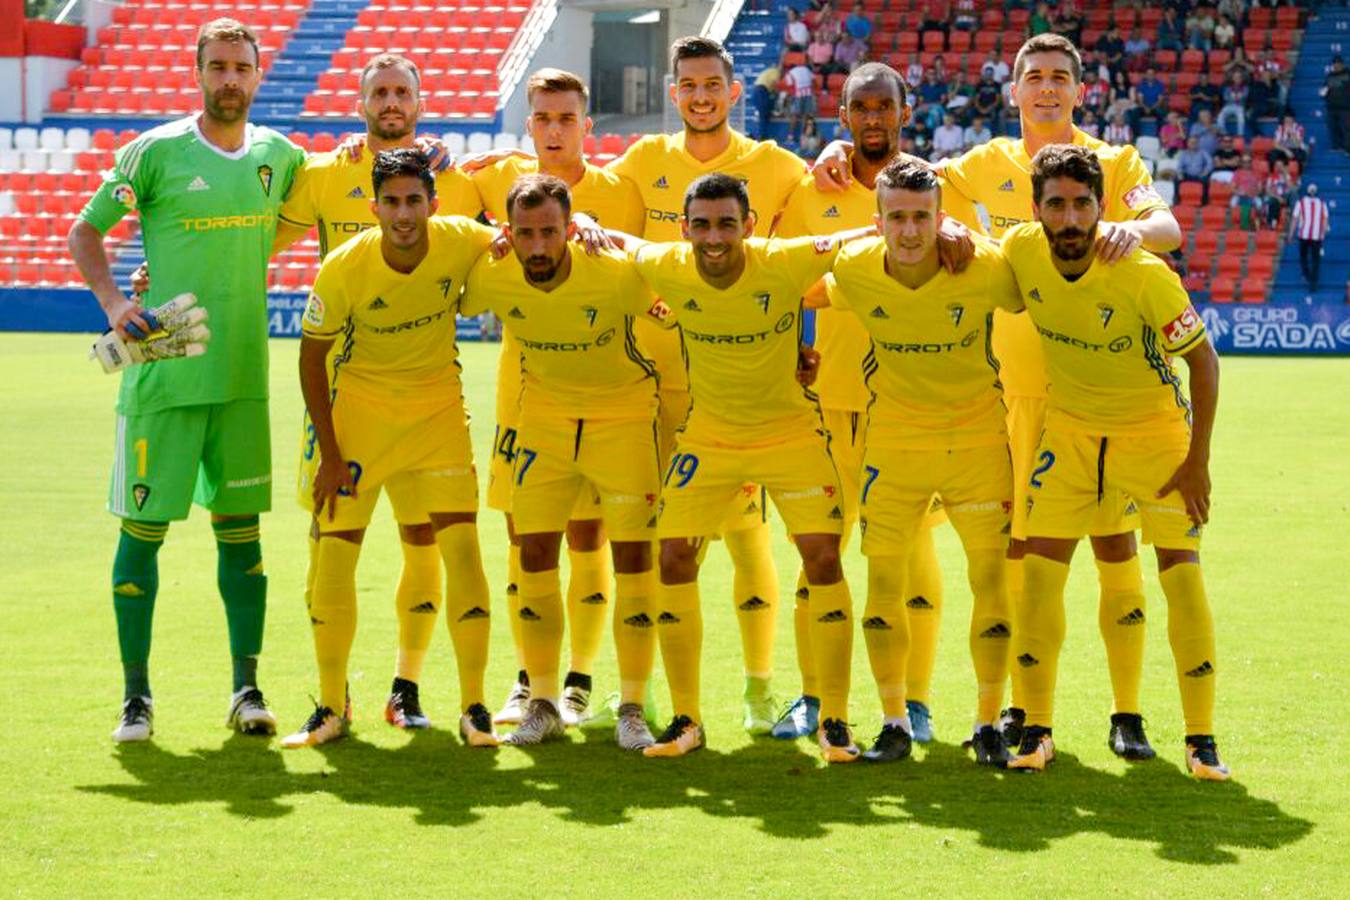 Las imágenes del partido Lugo-Cádiz CF (0-1)